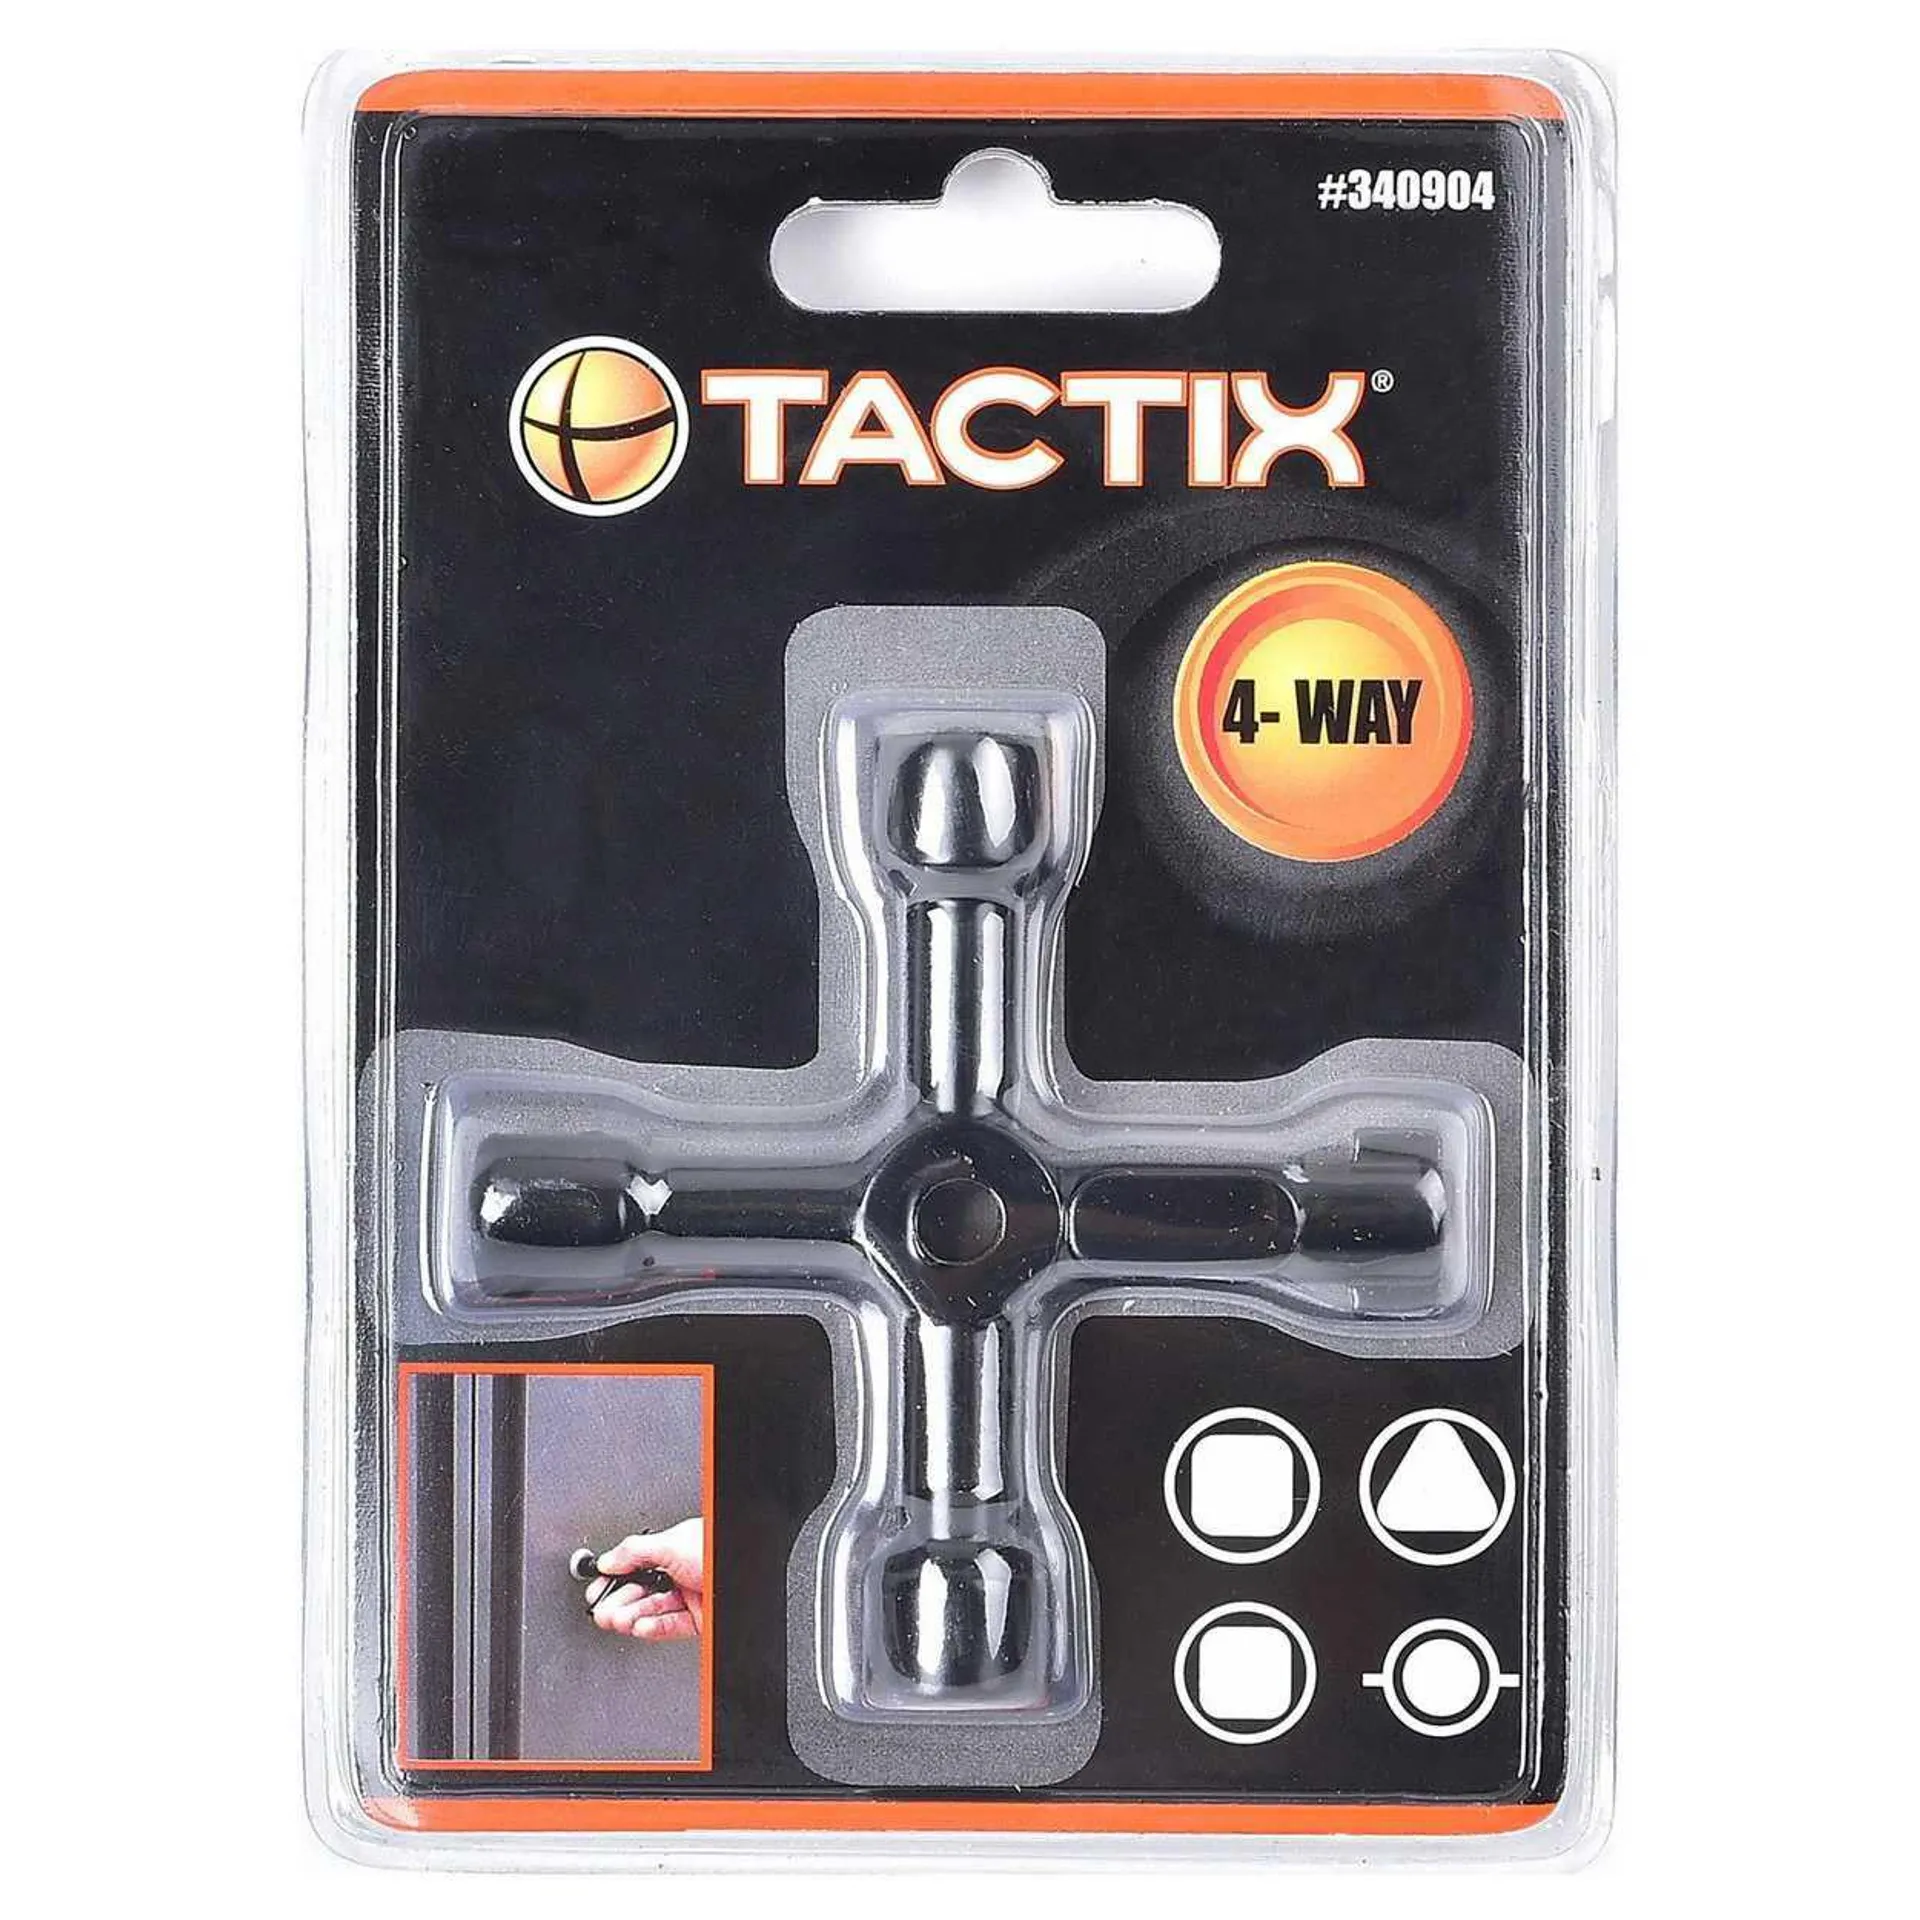 Tactix 4 Way Utility Key